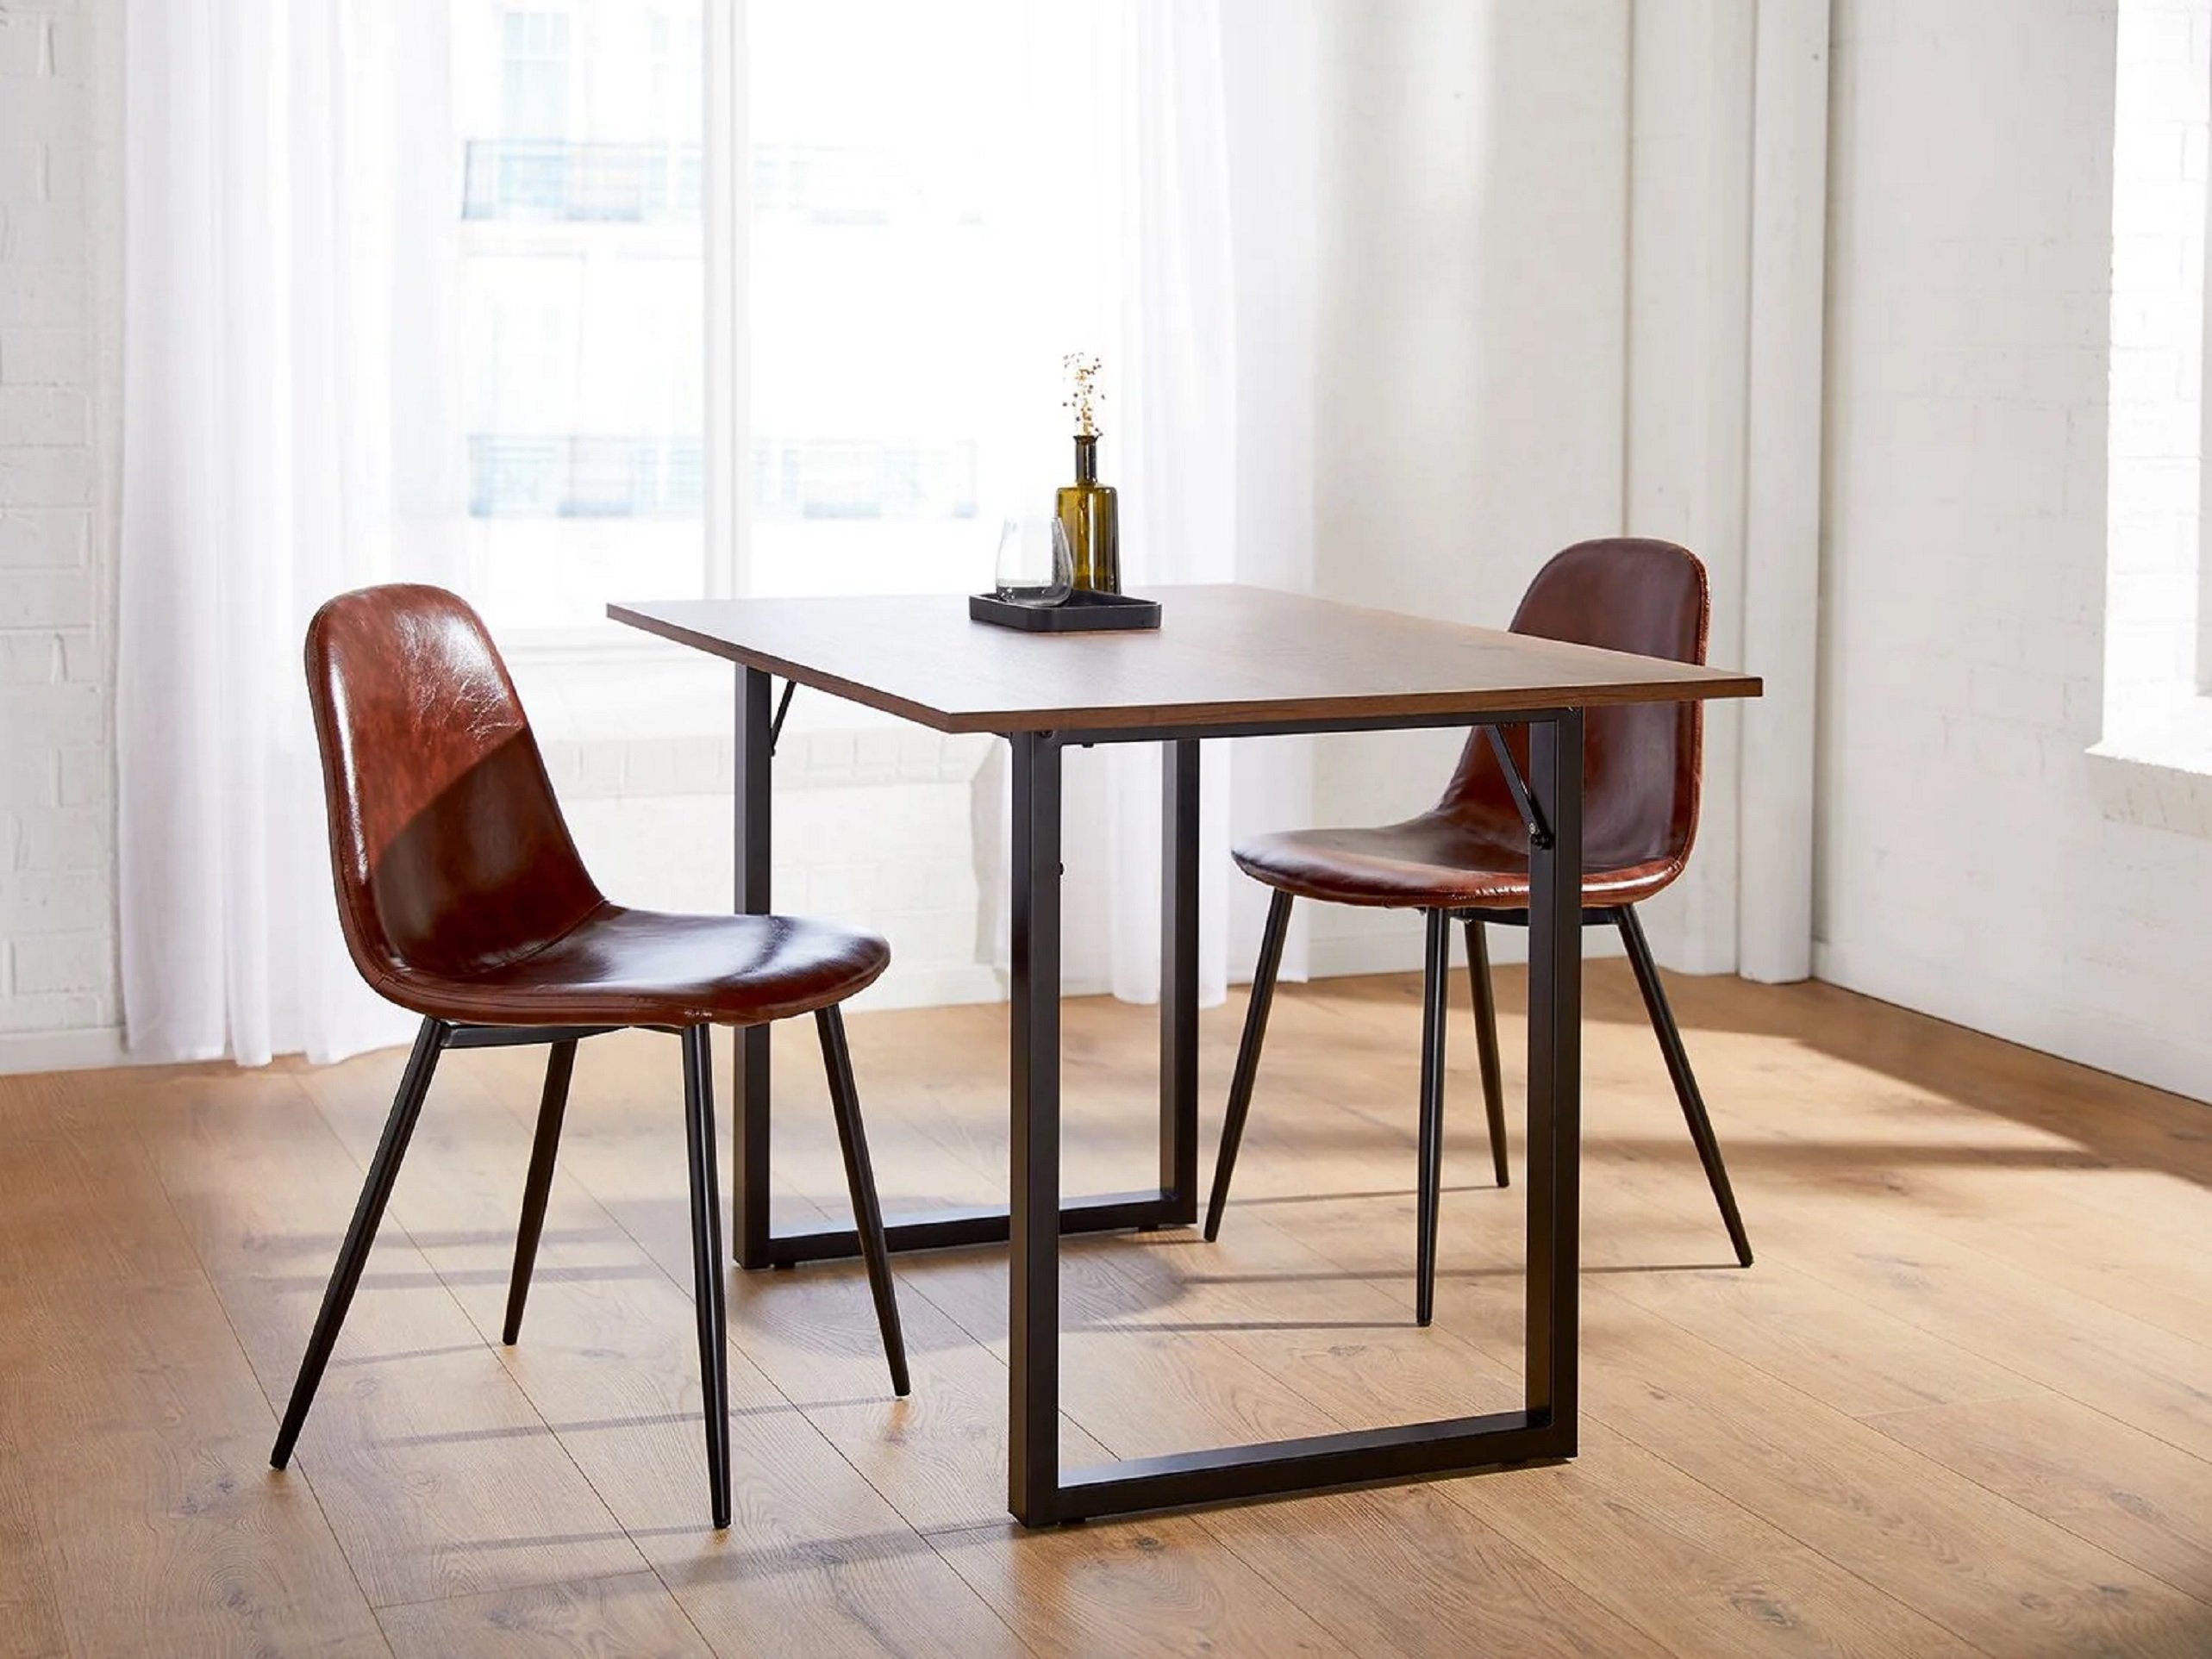 Lidl arrasa con una exclusiva colección de muebles de diseño al mejor precio